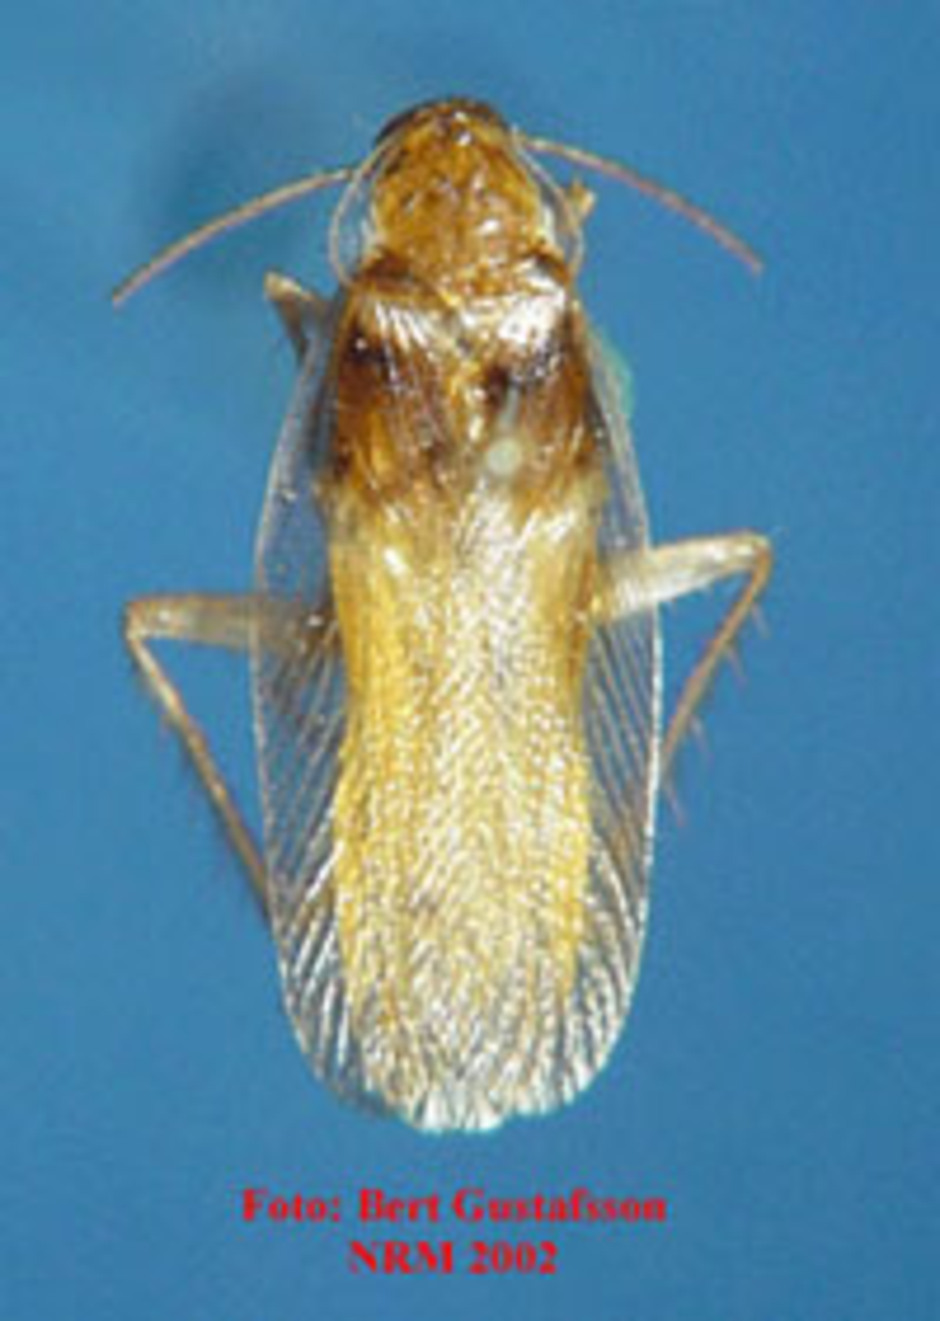 Brunbandad kackerlacka. Vuxen kackerlacka, från enheten för entomologis samlingar.